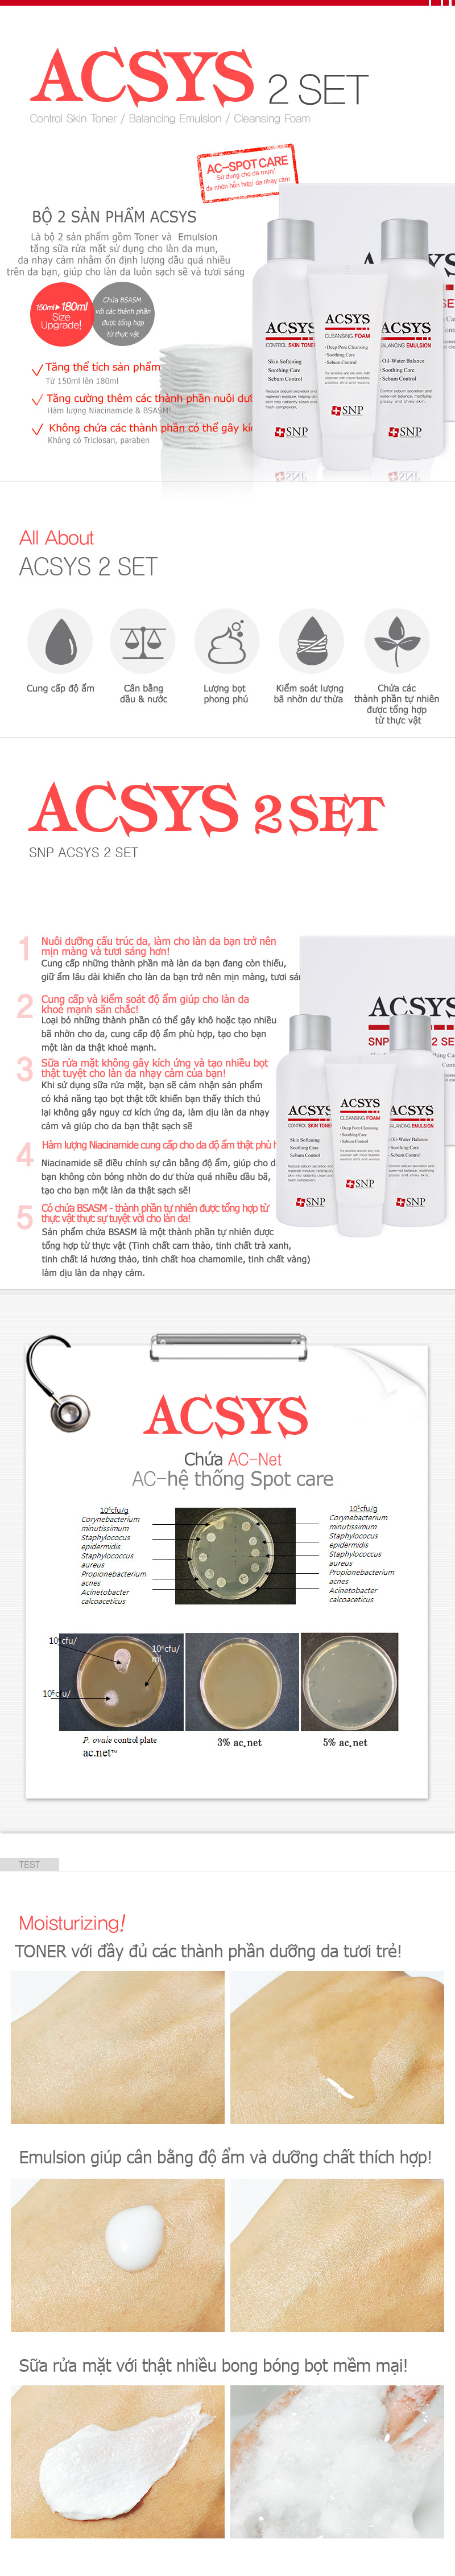 Bộ Set ACSYS Chuyên Trị Mụn - 3 sản phẩm